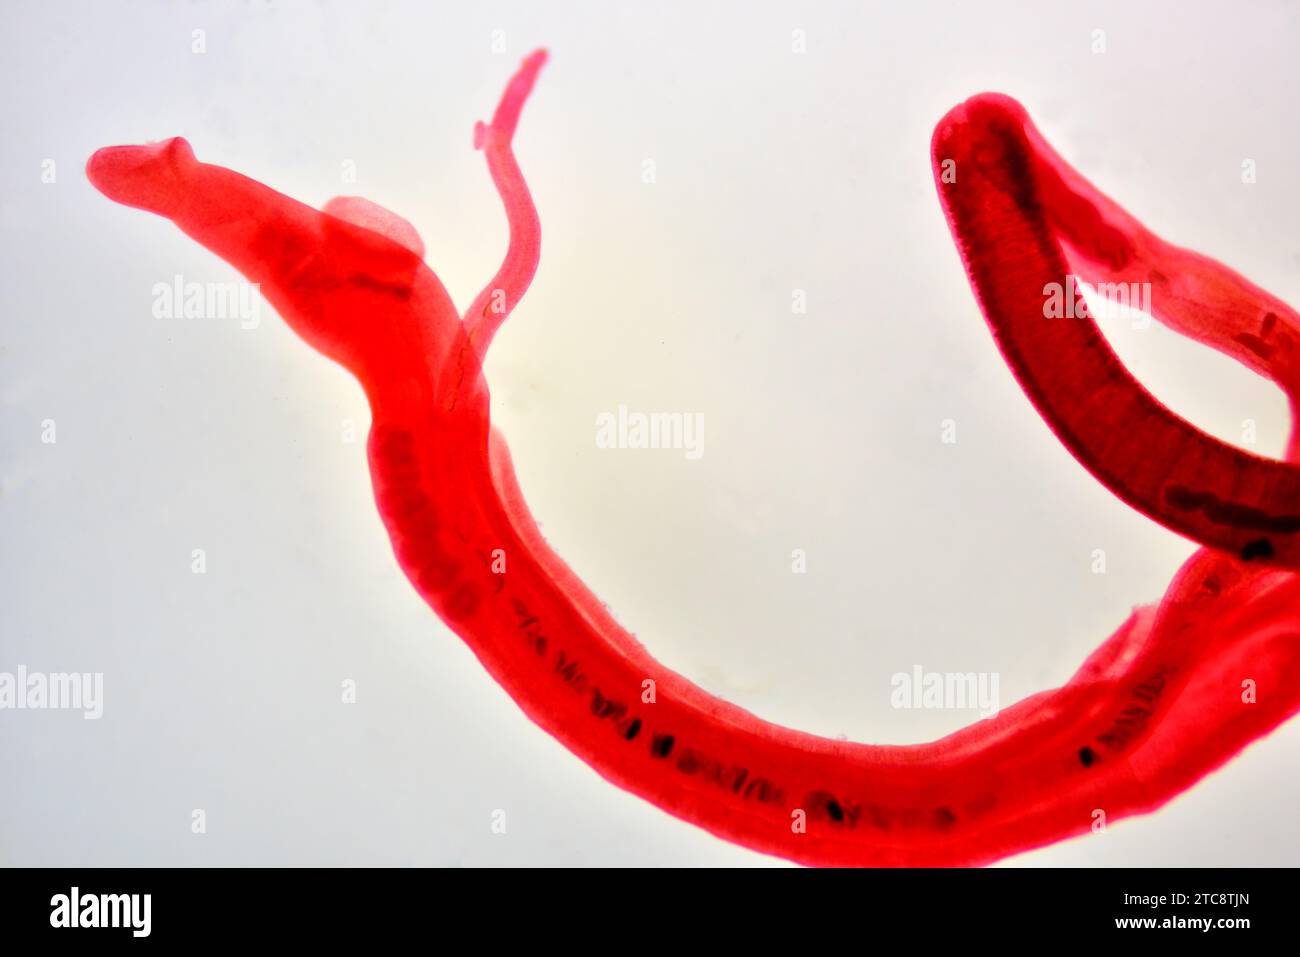 Schistosoma mansoni female and male copula. Light microscope X50 at 10 cm wide. Stock Photo